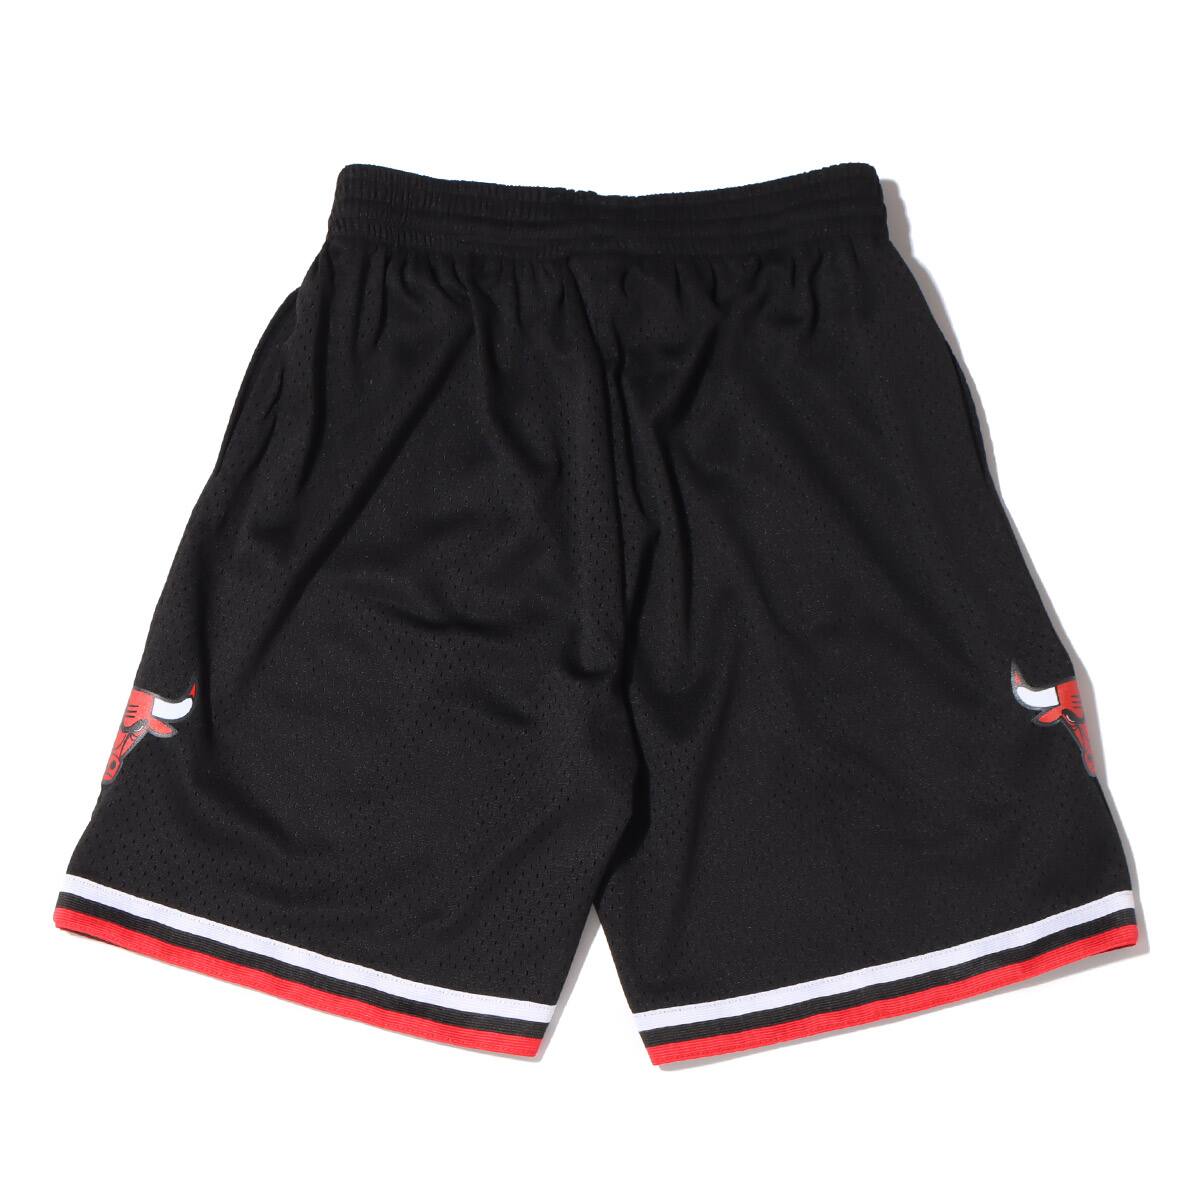 1998 Nike Chicago Bulls authentic shorts